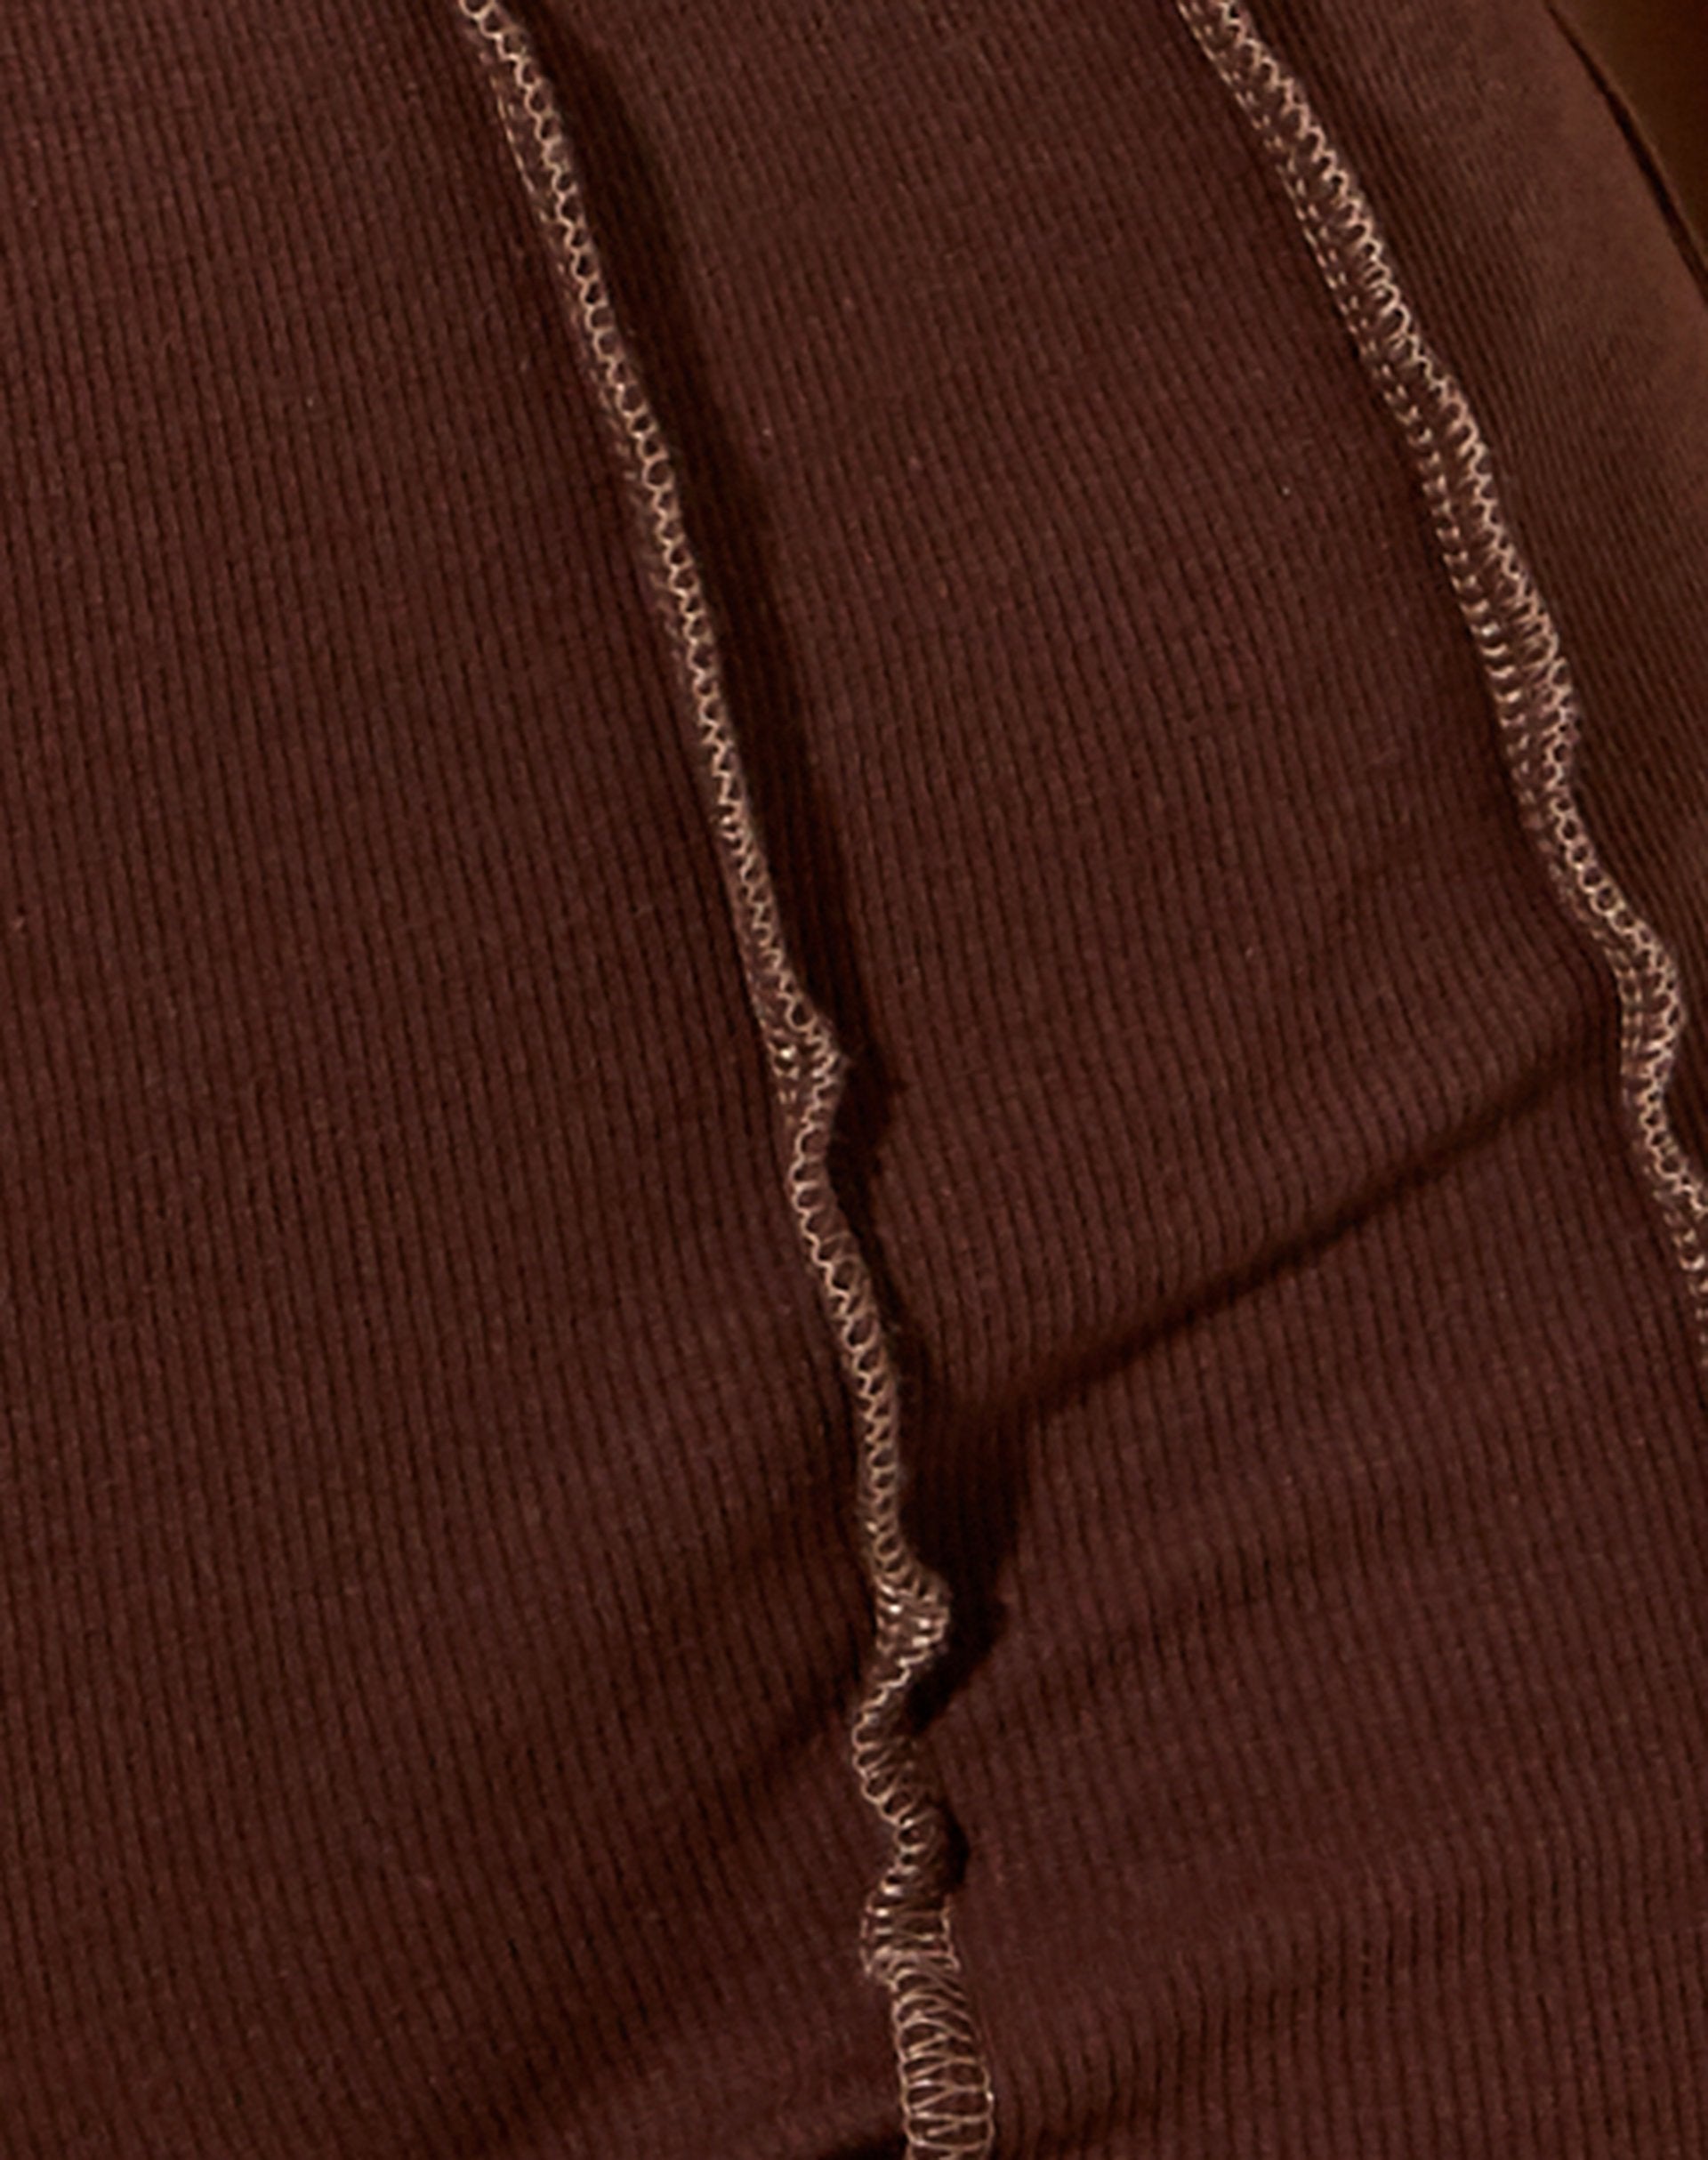 Kala Shorts in Rib Deep Mahogany with Brown Stitching